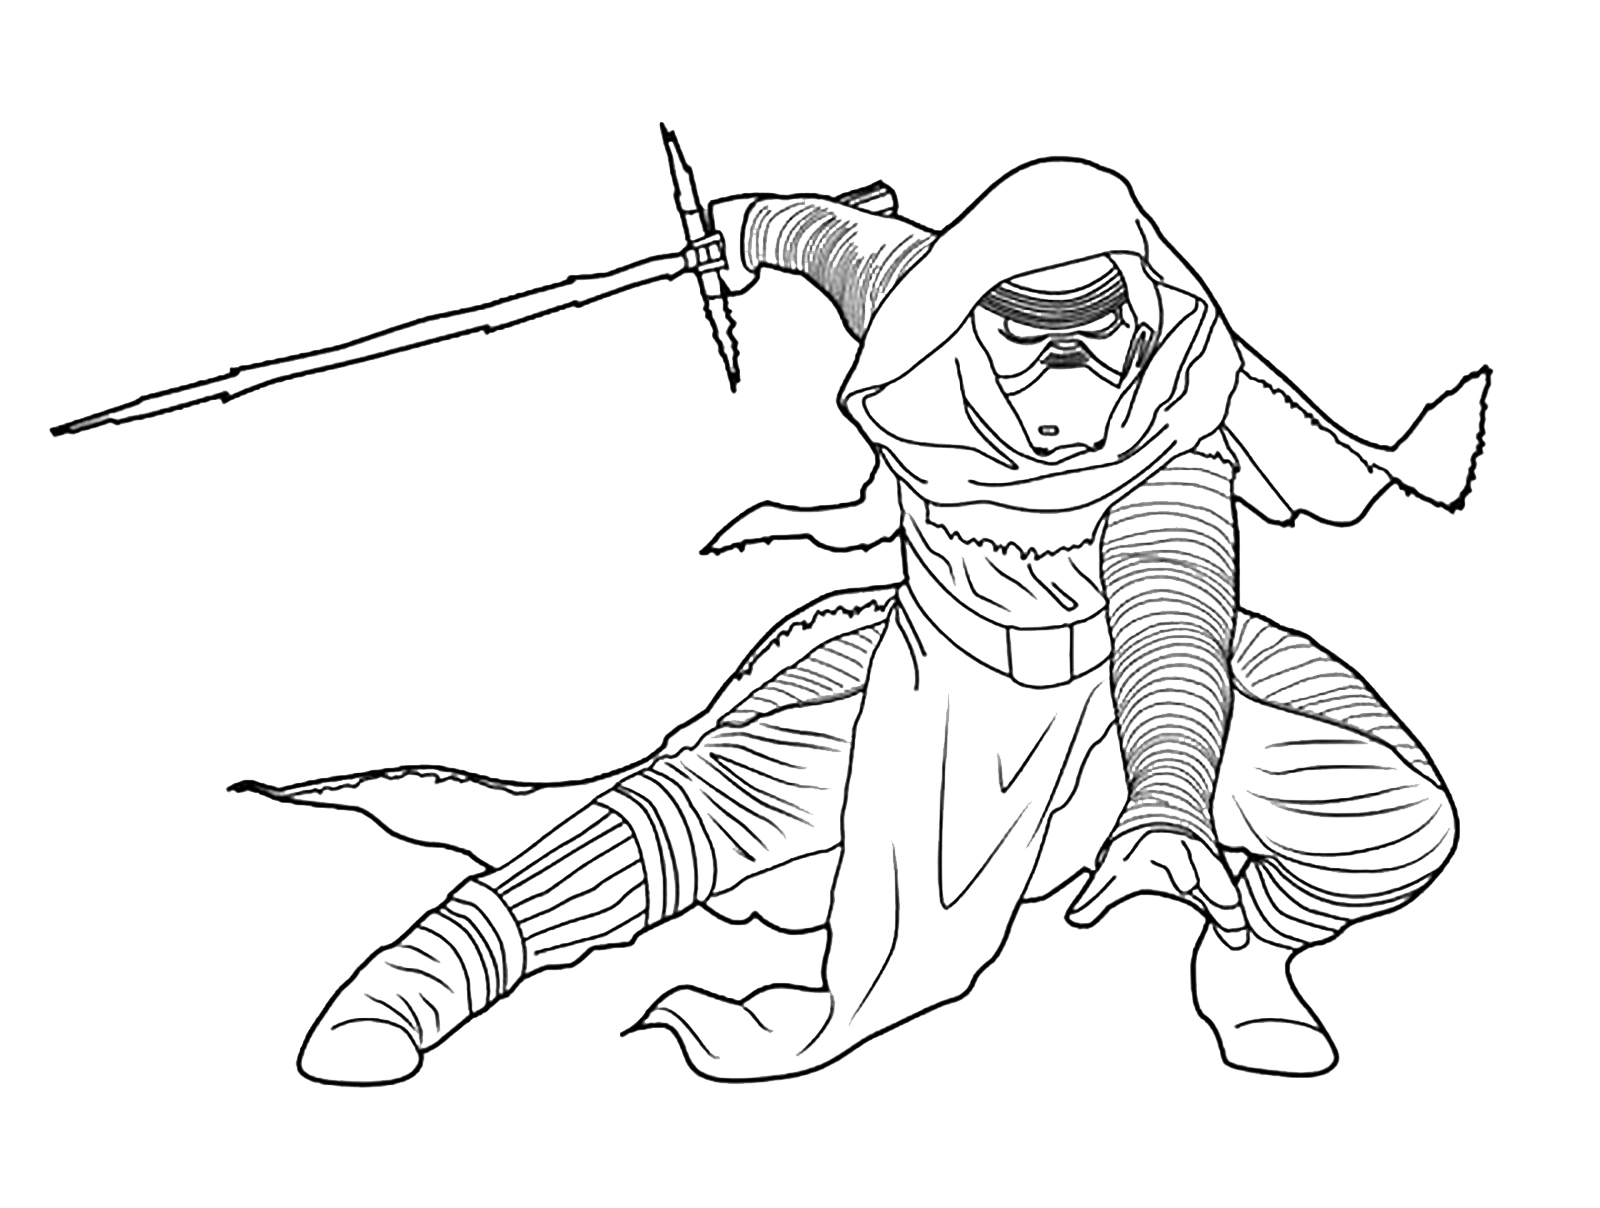 Kylo Ren pronto all attacco con la sua spada laser